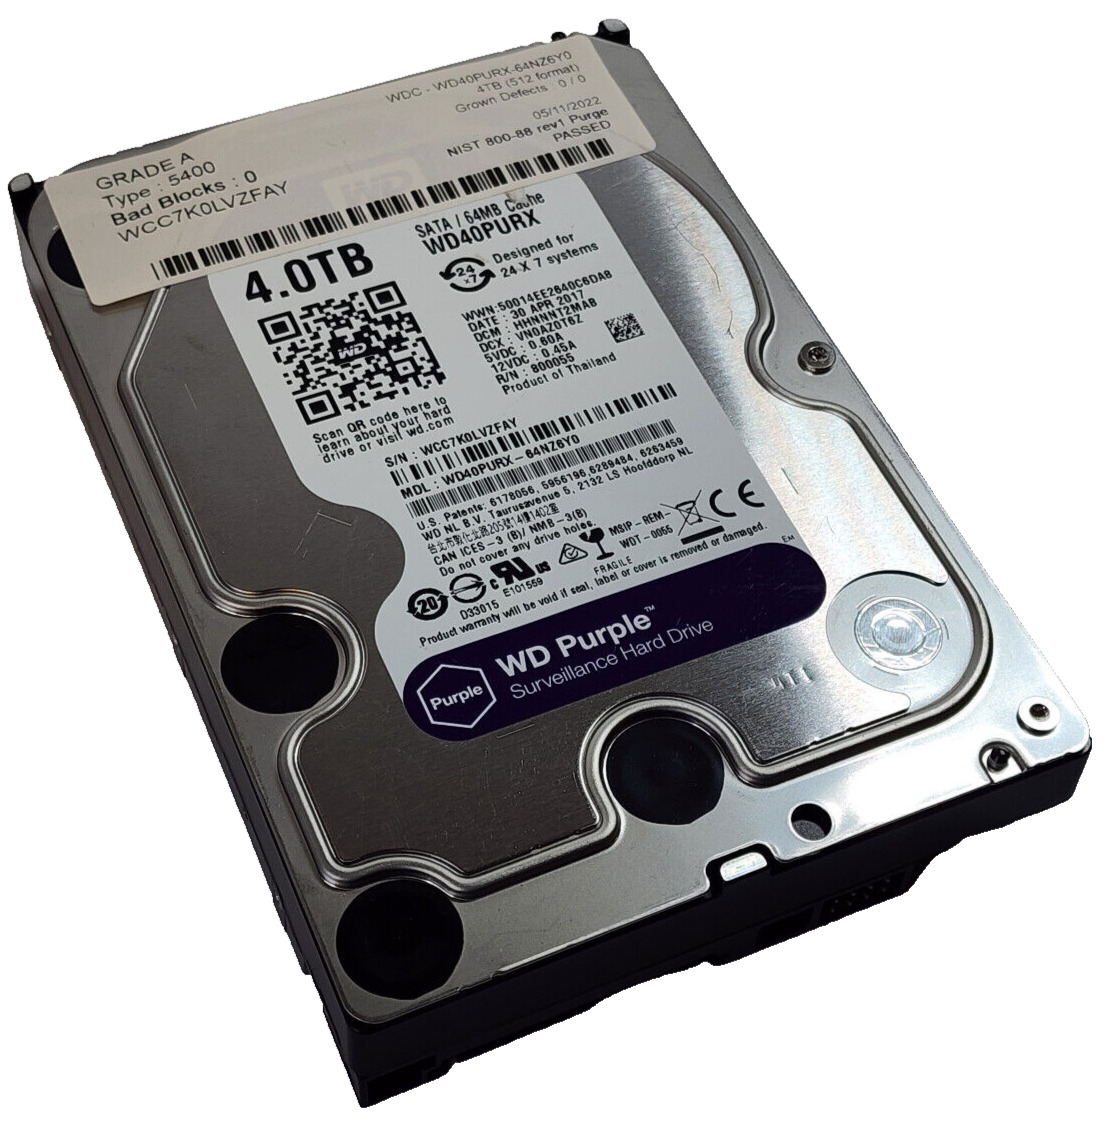 Western Digital WD Purple 4TB HDD SATA lll Surveillance Hard Disk Drive WD40PURX